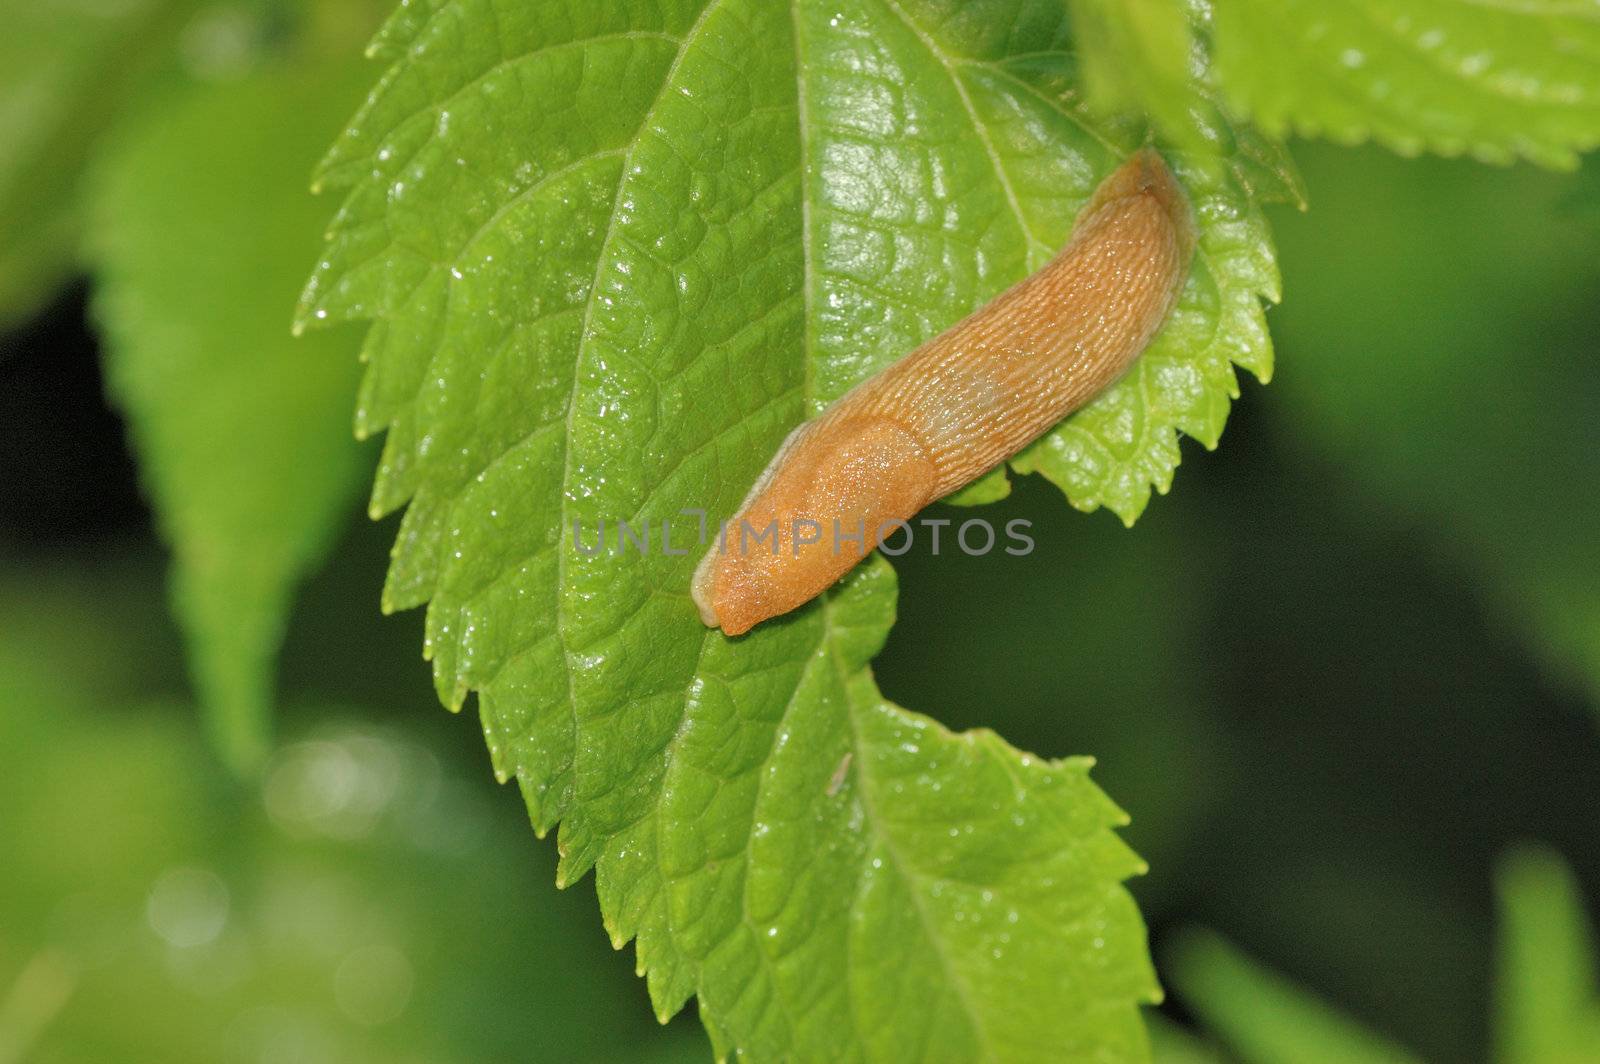 Garden Slug crawling along a plant leaf.